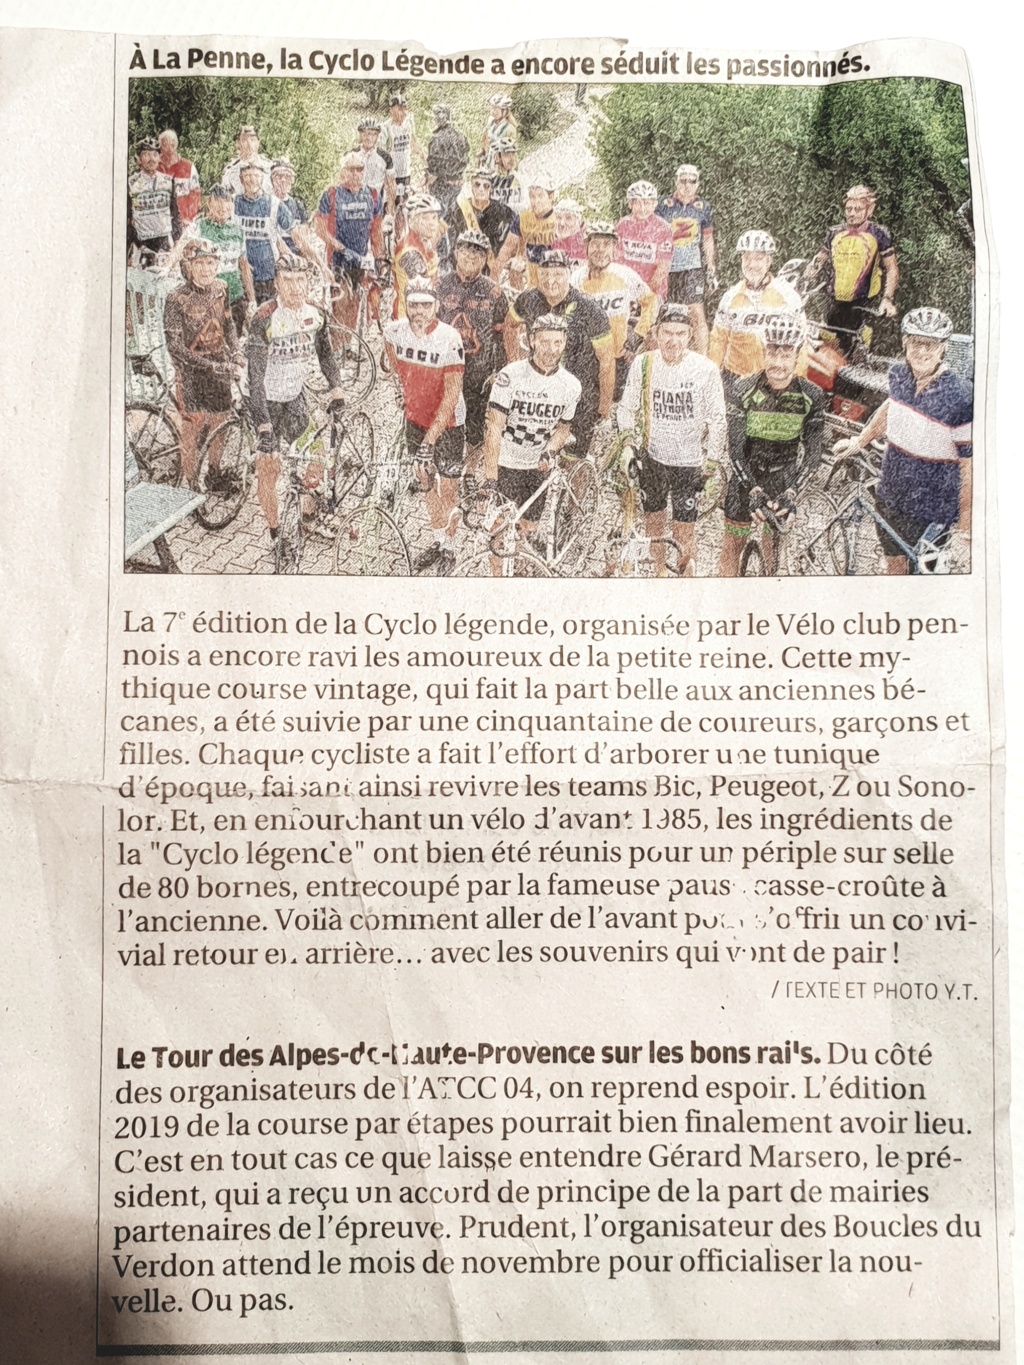 Cyclo legende 2018 - Page 6 20181014